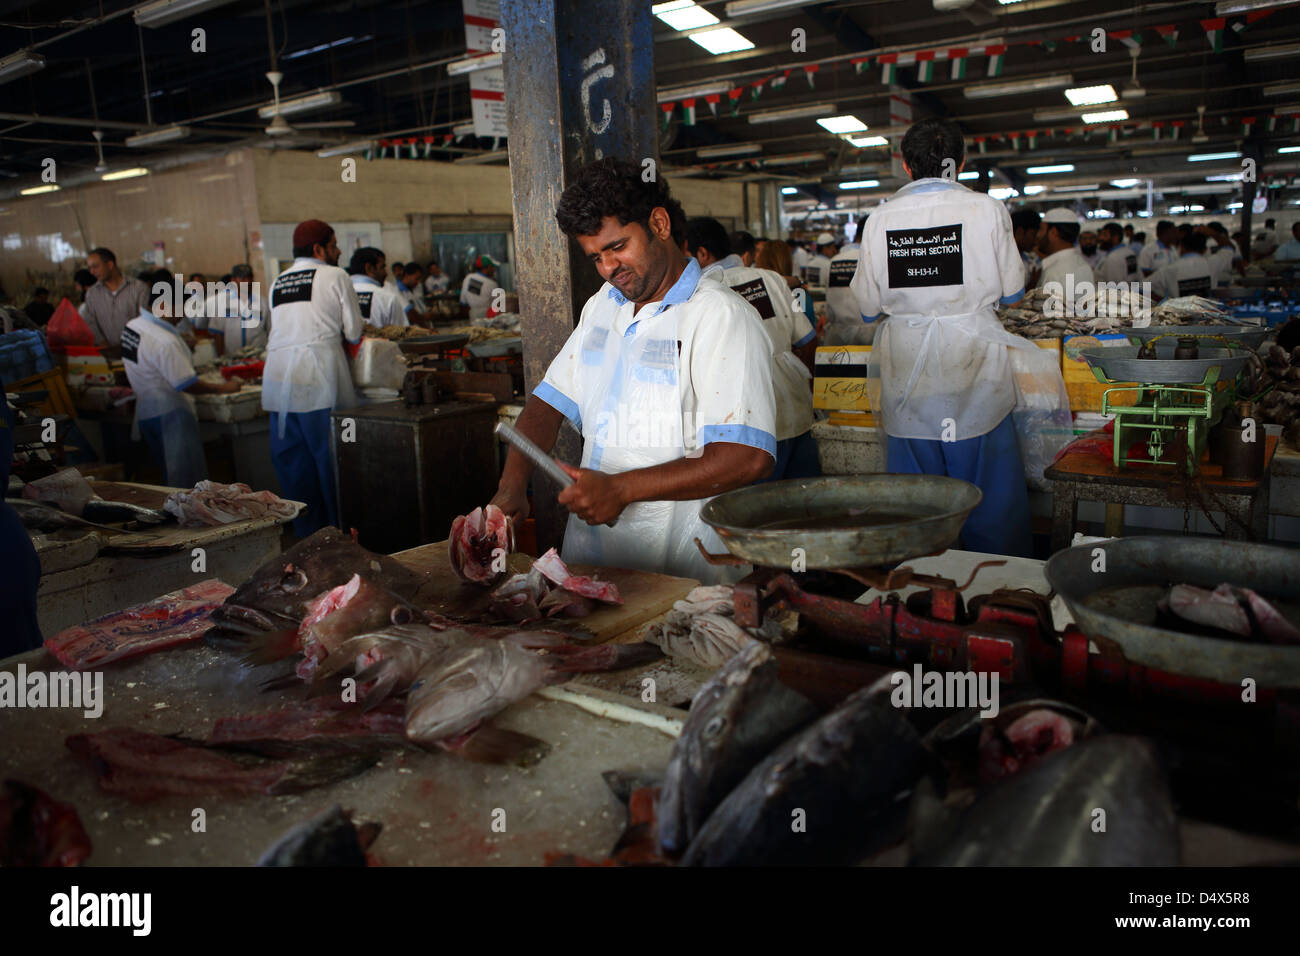 Fish market, Dubai, United Arab Emirates Stock Photo